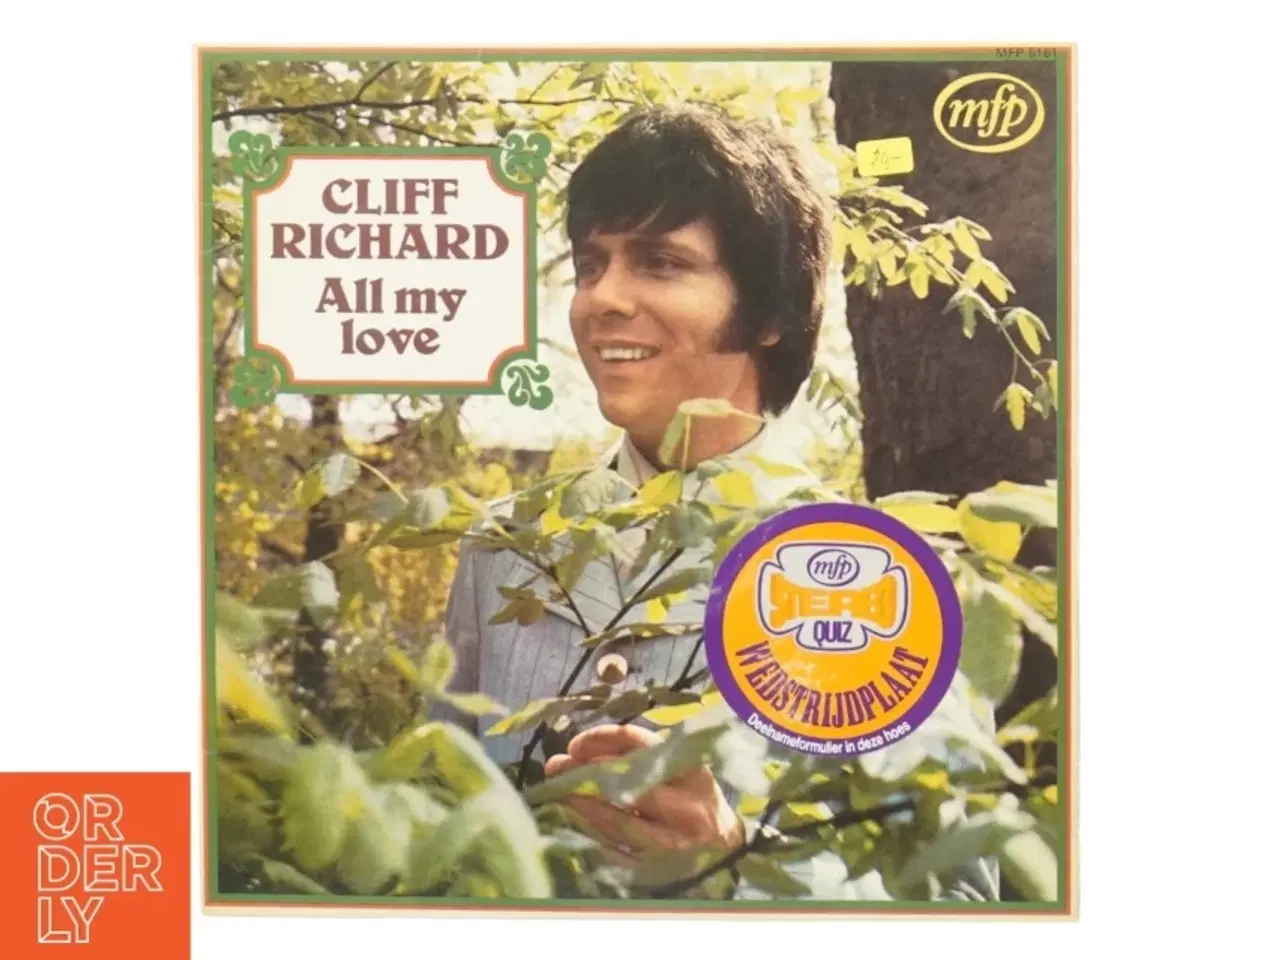 Billede 1 - Cliff Richard, all my love fra Mfp (str. 30 cm)